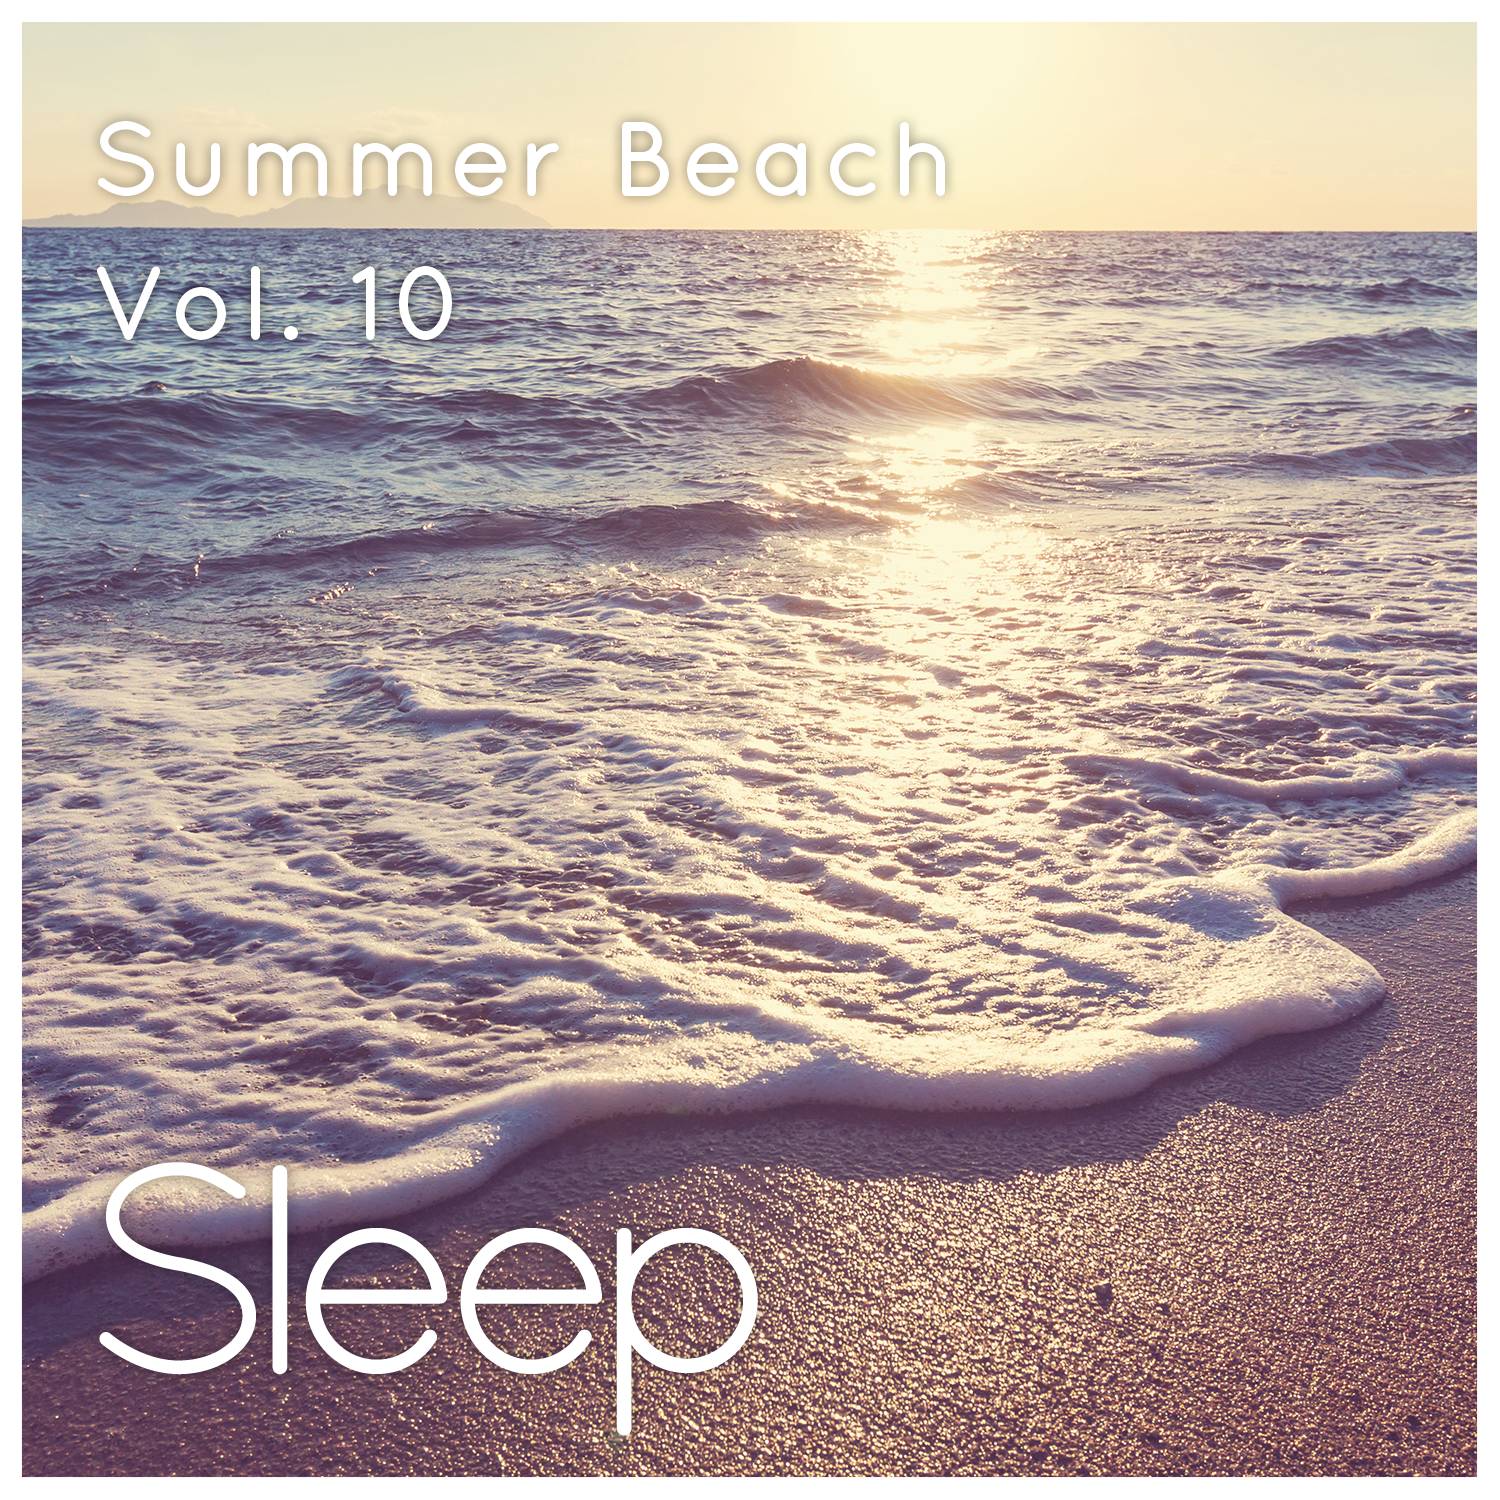 Summer Sleep at the Beach, Pt. 49